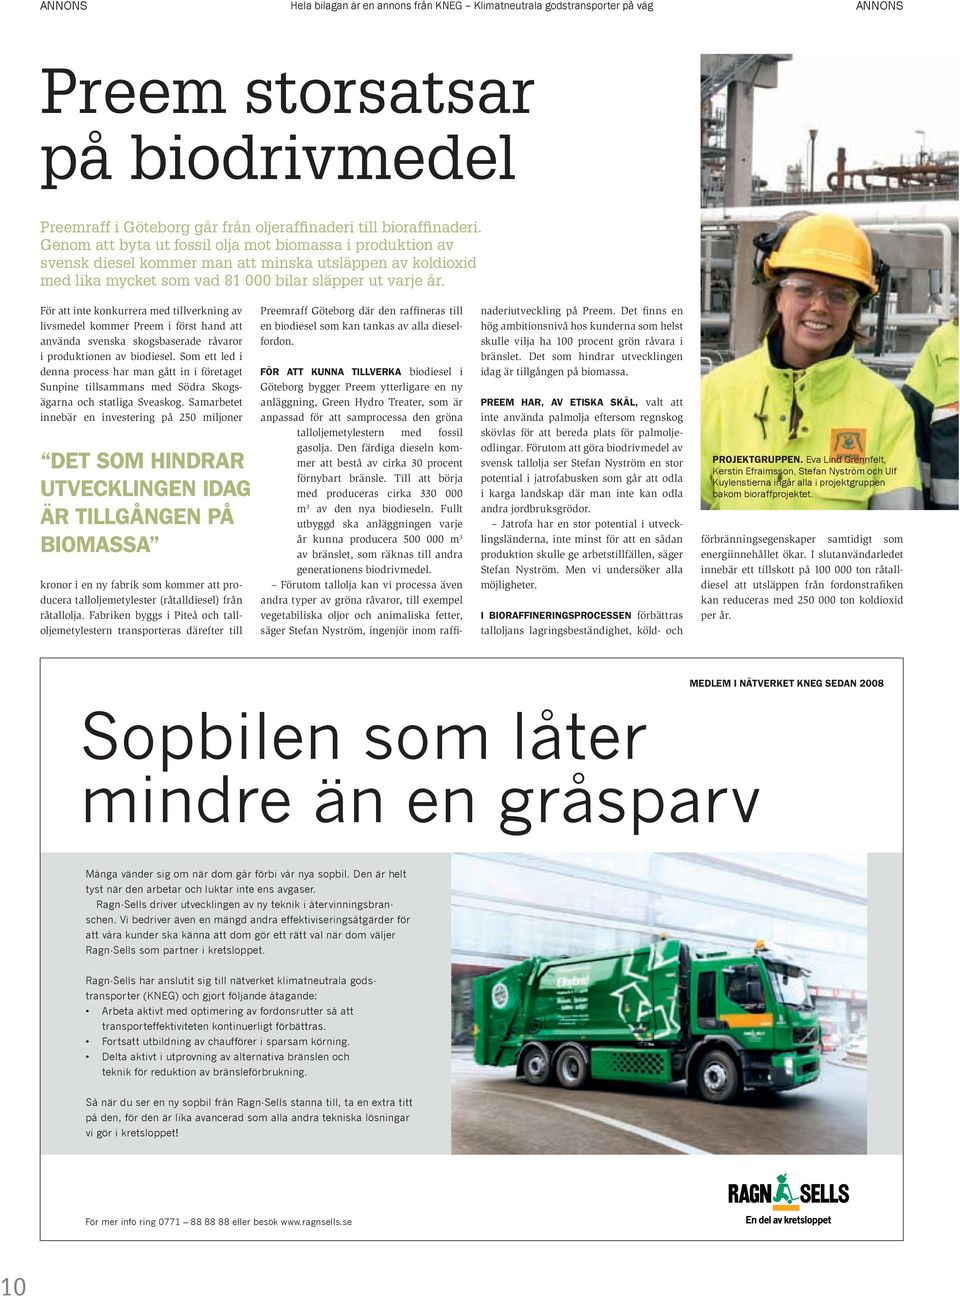 För att inte konkurrera med tillverkning av livsmedel kommer Preem i först hand att använda svenska skogsbaserade råvaror i produktionen av biodiesel.